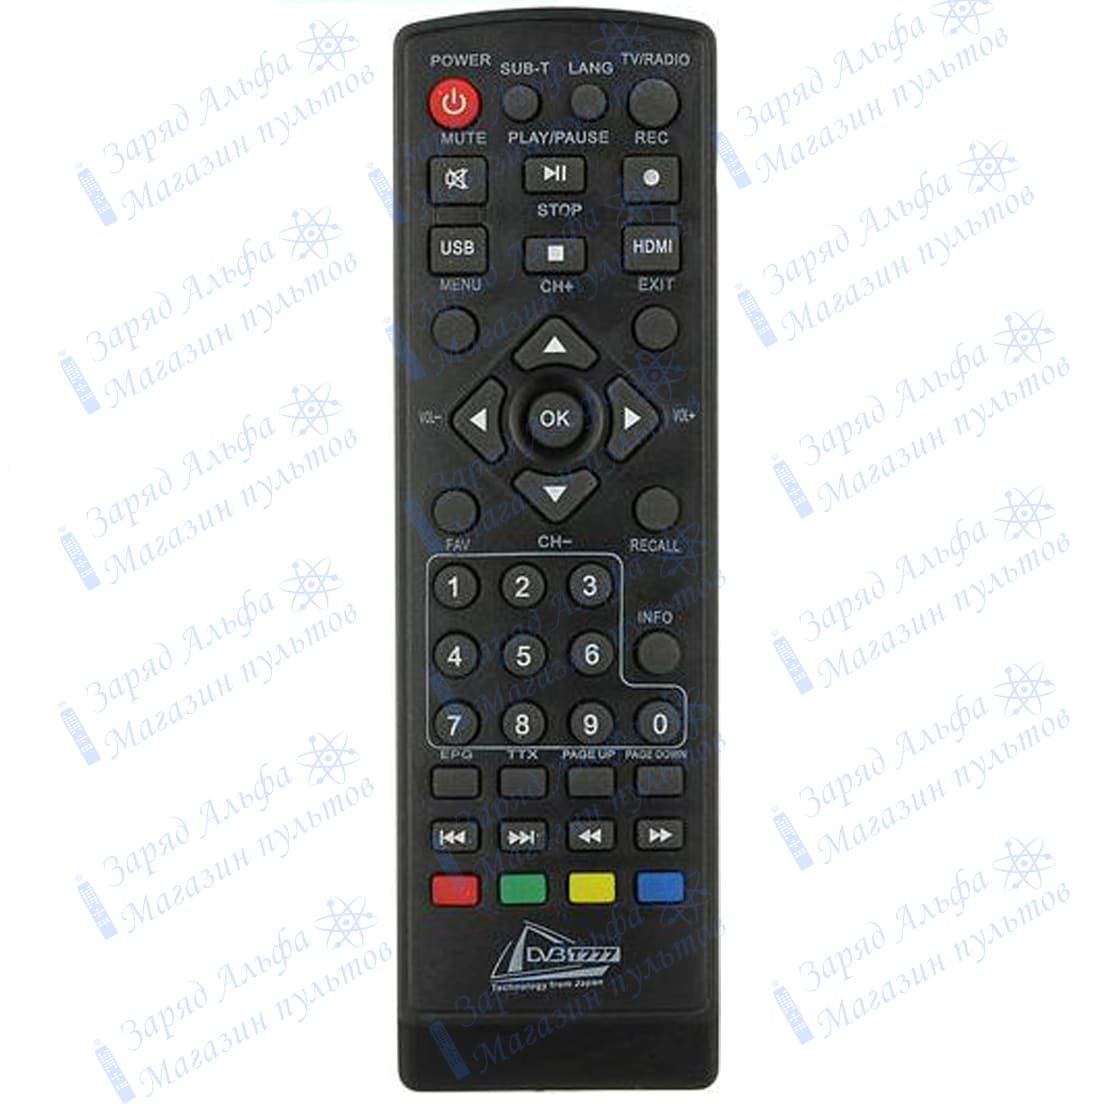 Пульт к BEKO DVBT777, OTAU DVBT999, OPENBOX DVBT777 для цифровой приставки ресивера DVB-T2